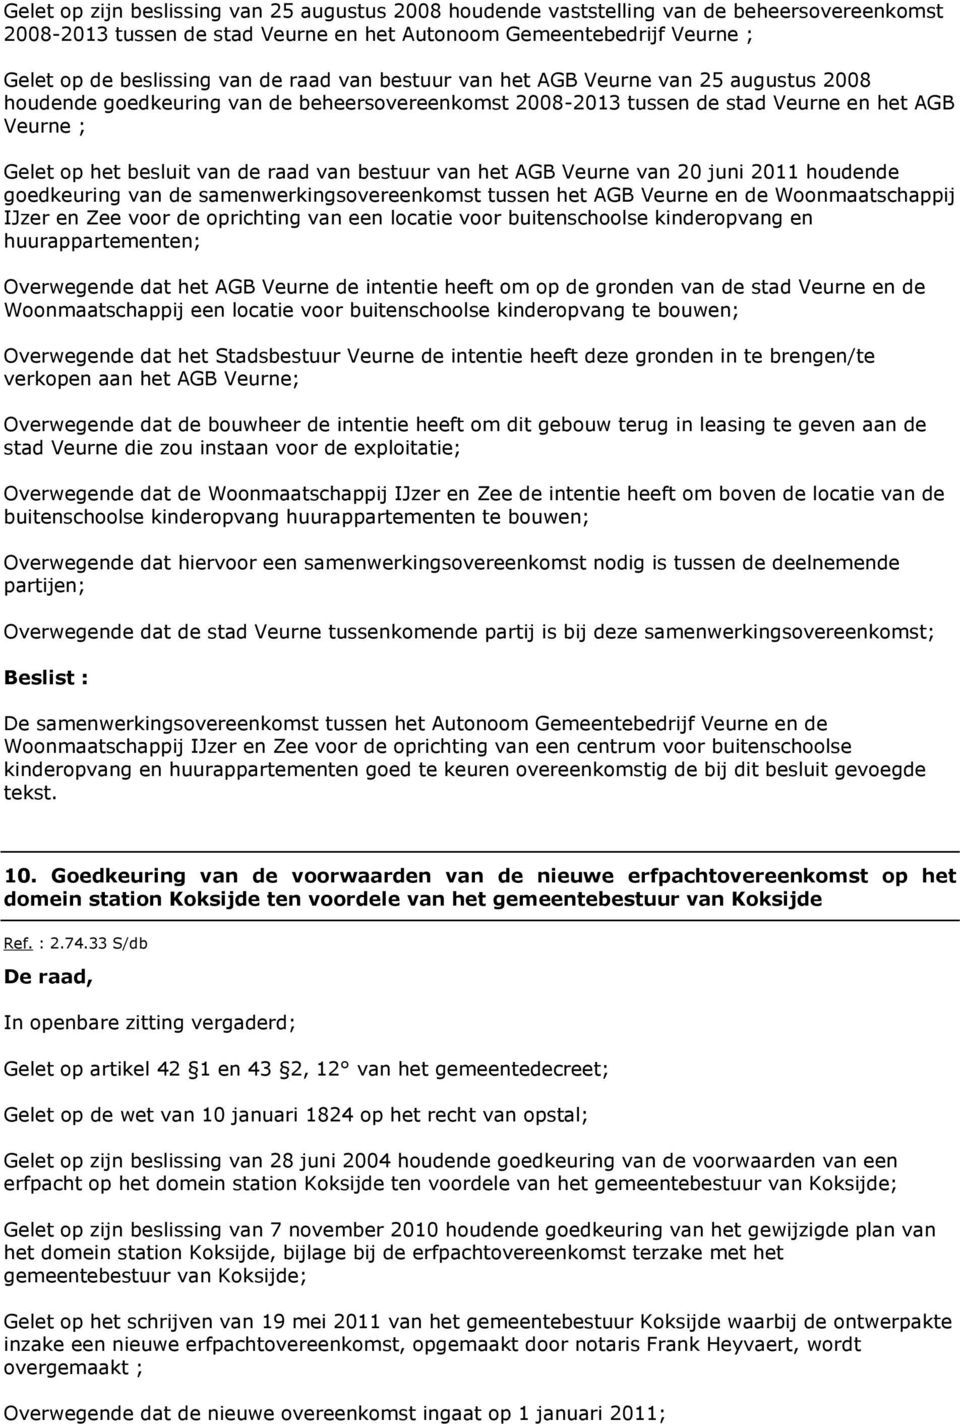 bestuur van het AGB Veurne van 20 juni 2011 houdende goedkeuring van de samenwerkingsovereenkomst tussen het AGB Veurne en de Woonmaatschappij IJzer en Zee voor de oprichting van een locatie voor